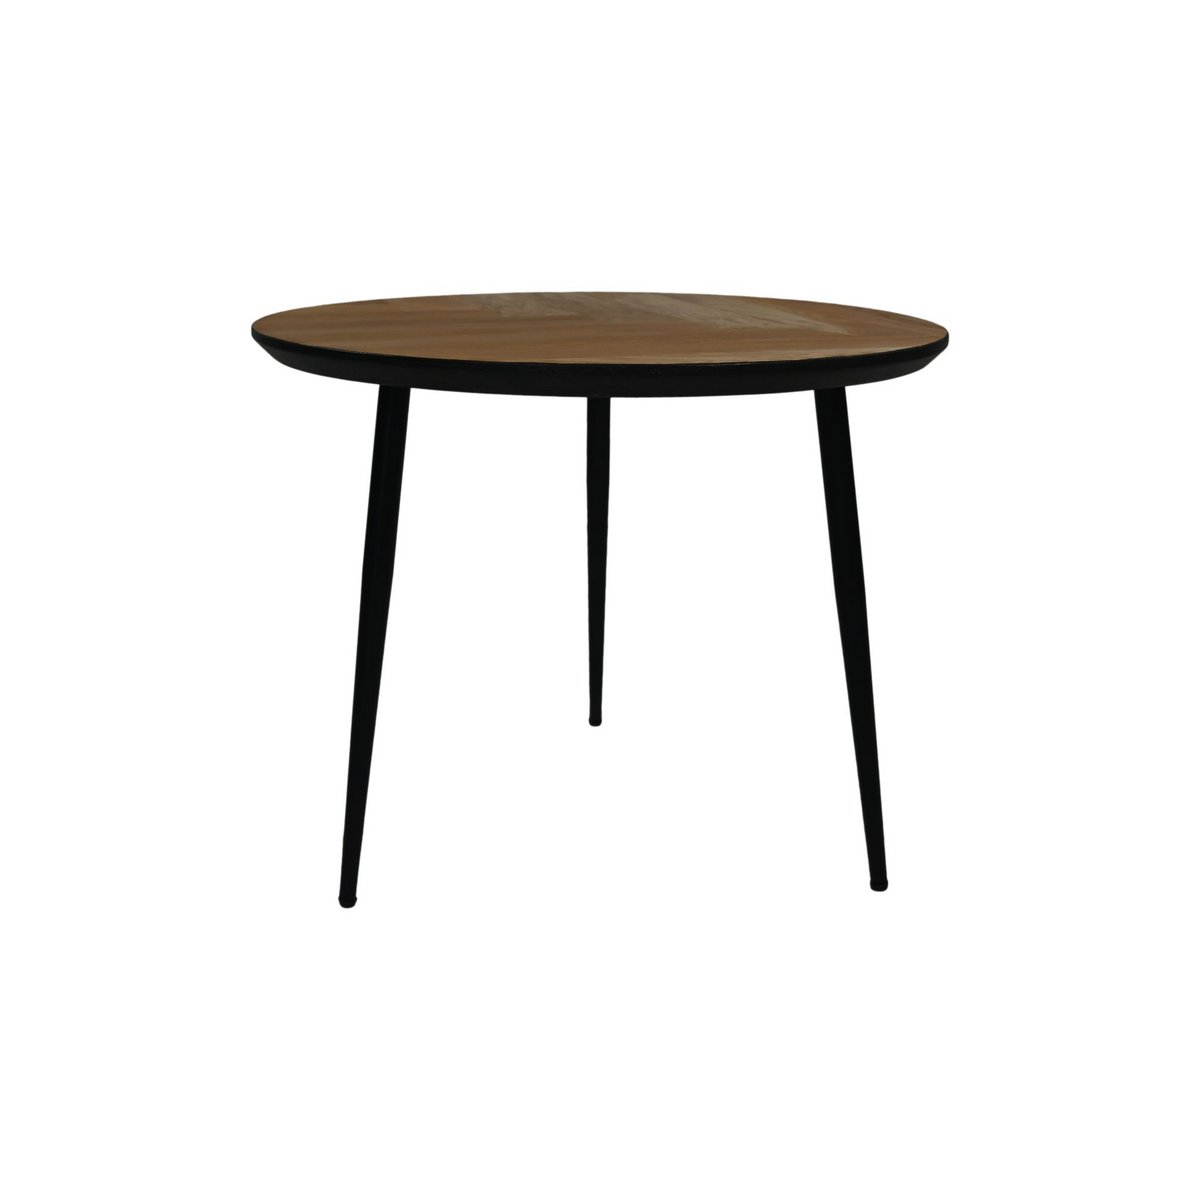 Ronde vimba salontafel van eikenhout met drie zwarte metalen poten en zwarte swiss edge randafwerking zijkant